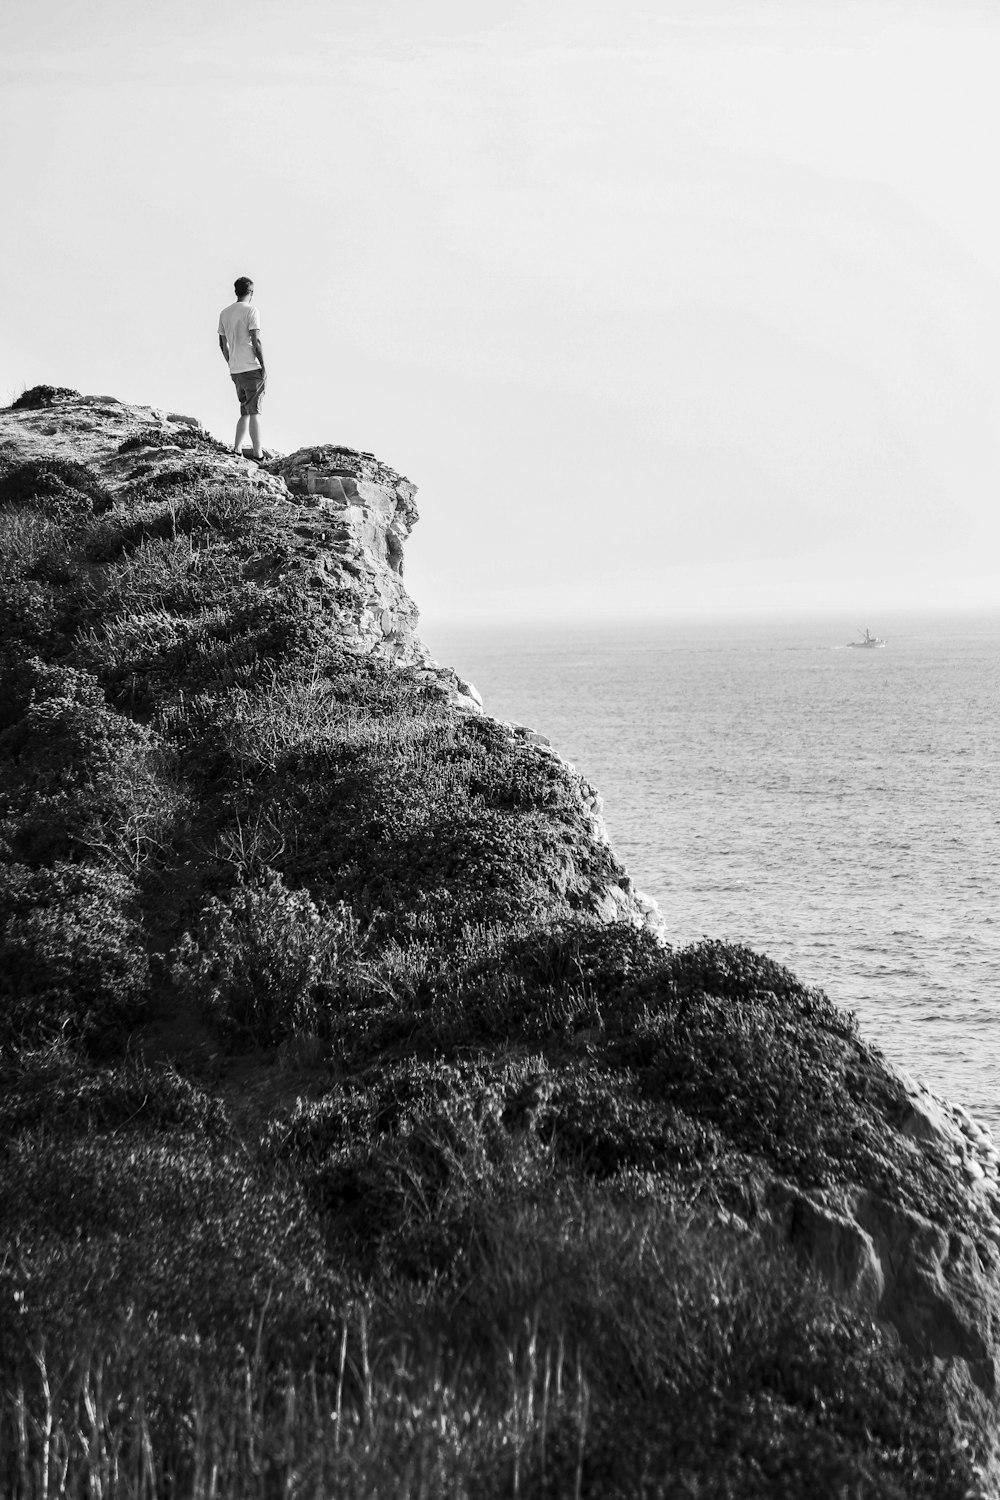 수역 근처의 암석에 서 있는 사람의 회색조 사진